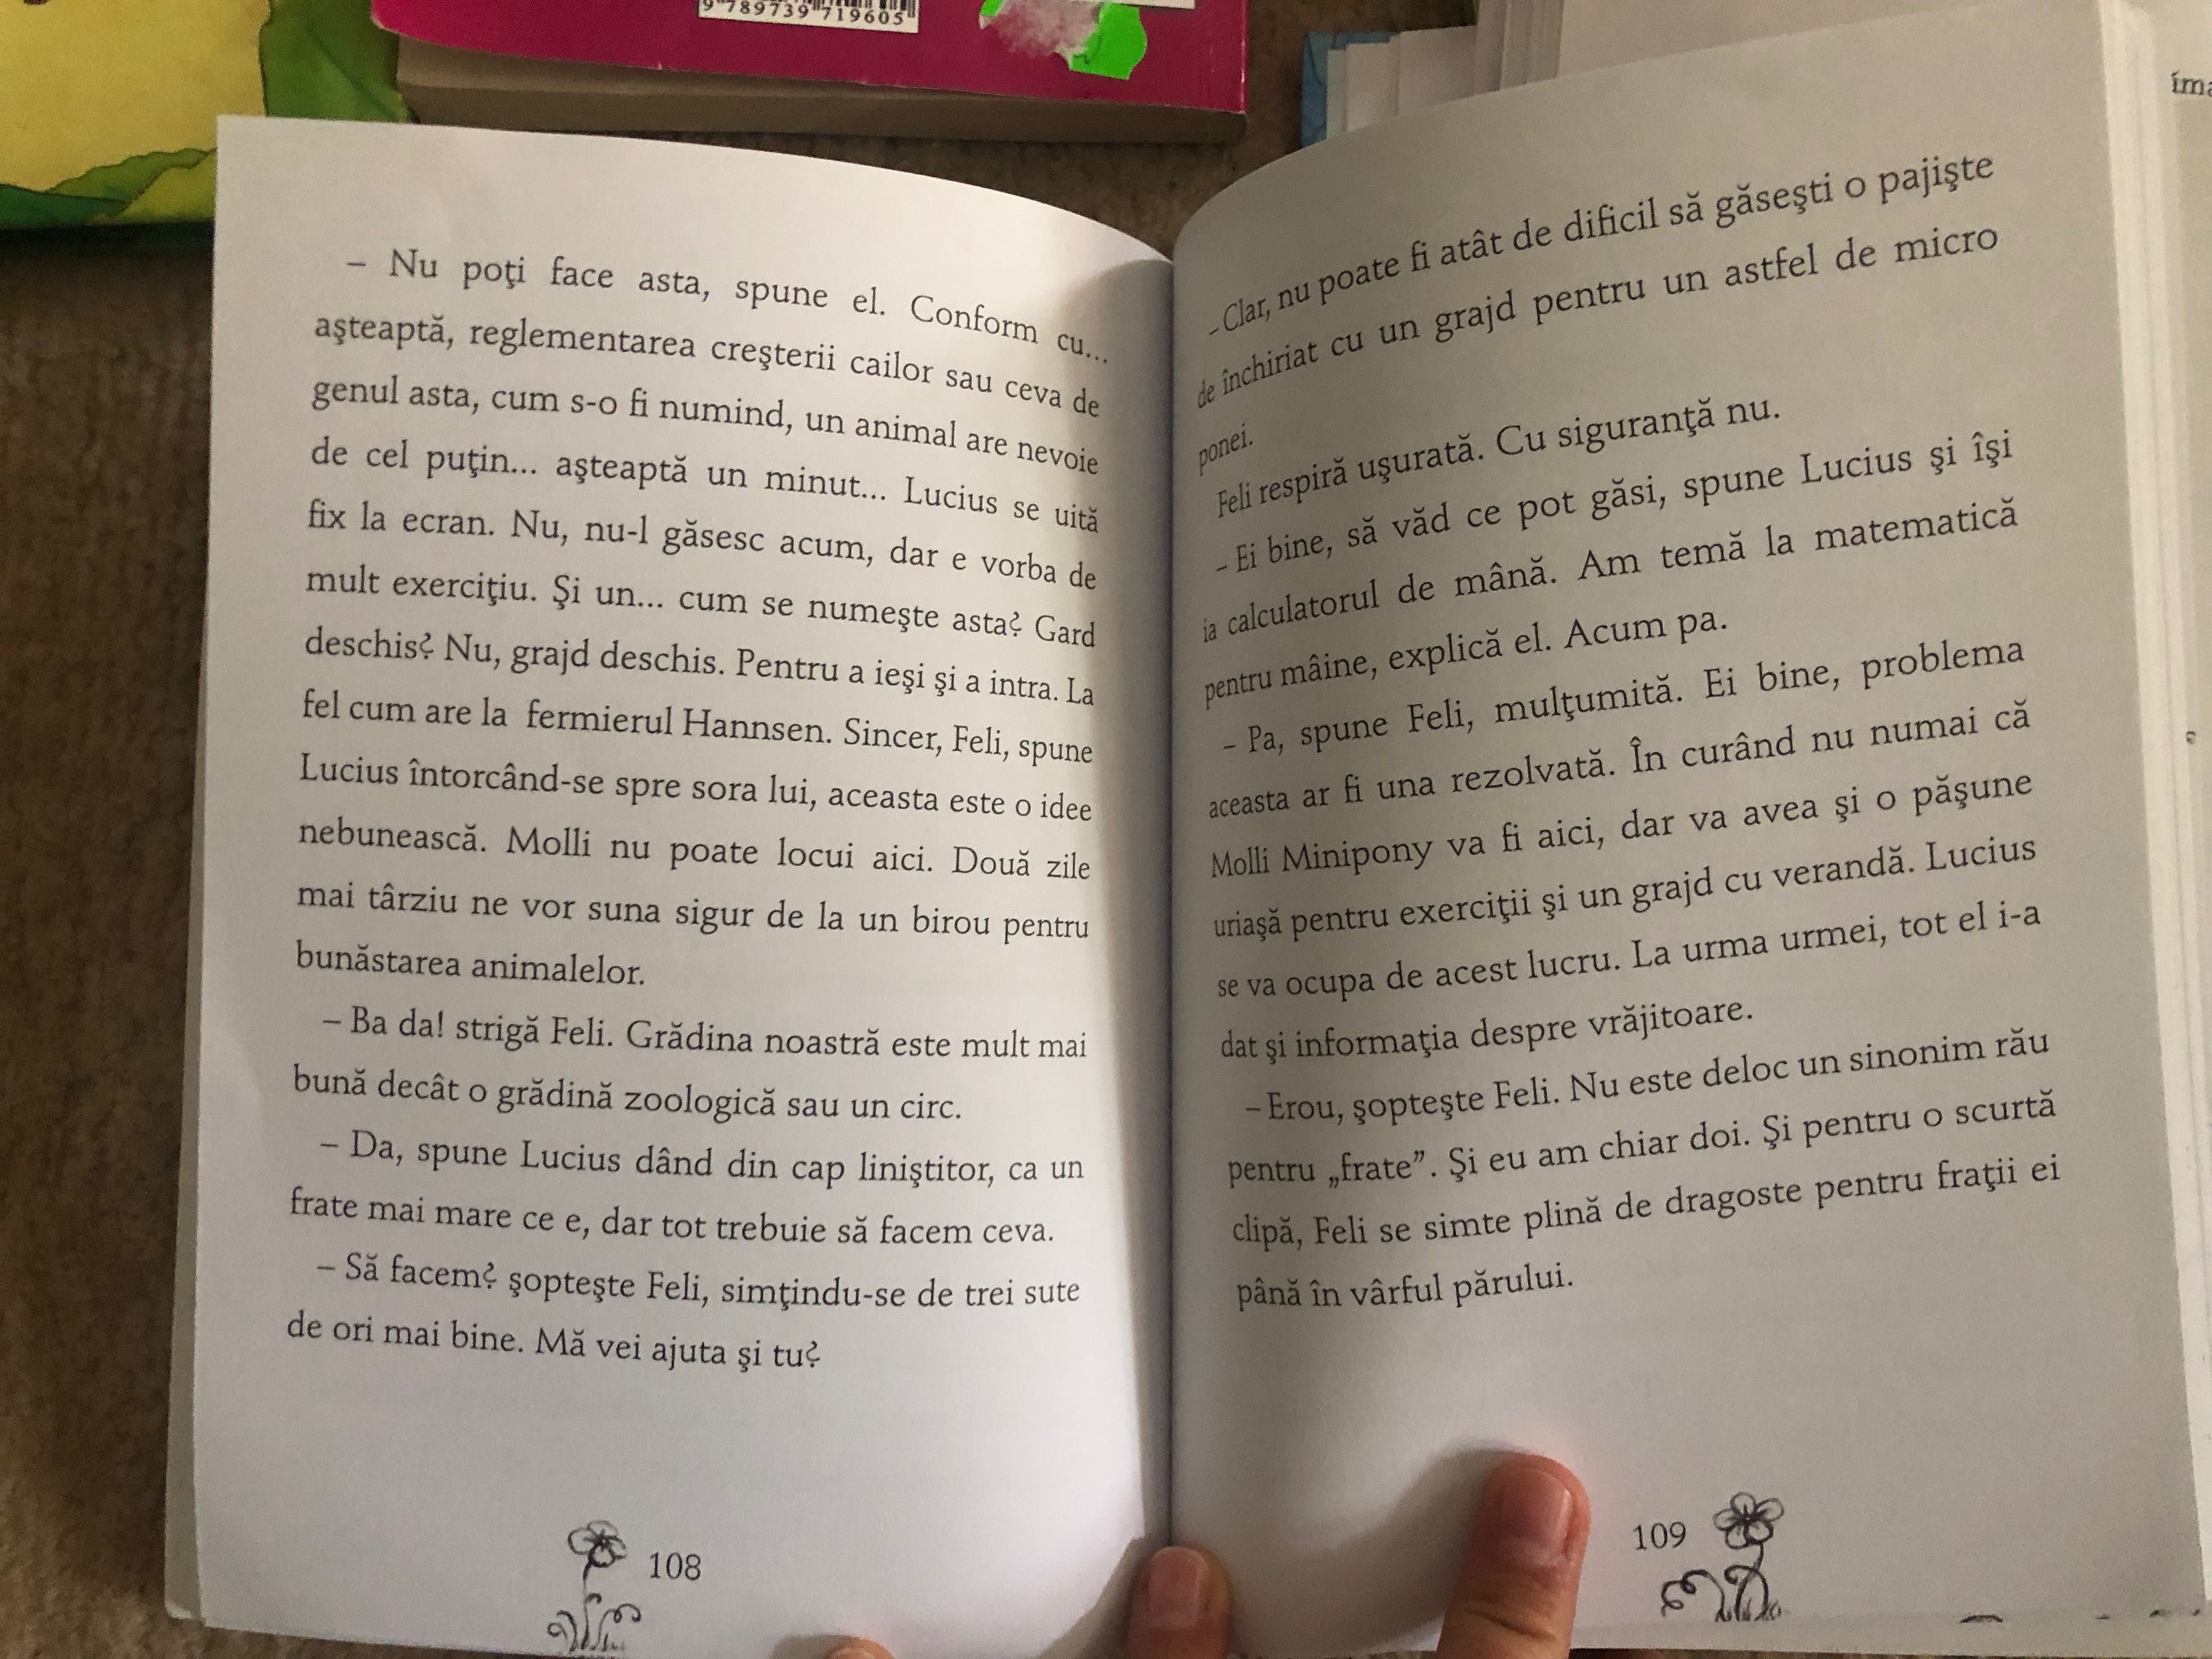 Vand lot cărți fetițe, stare foarte buna (7-10 ani)